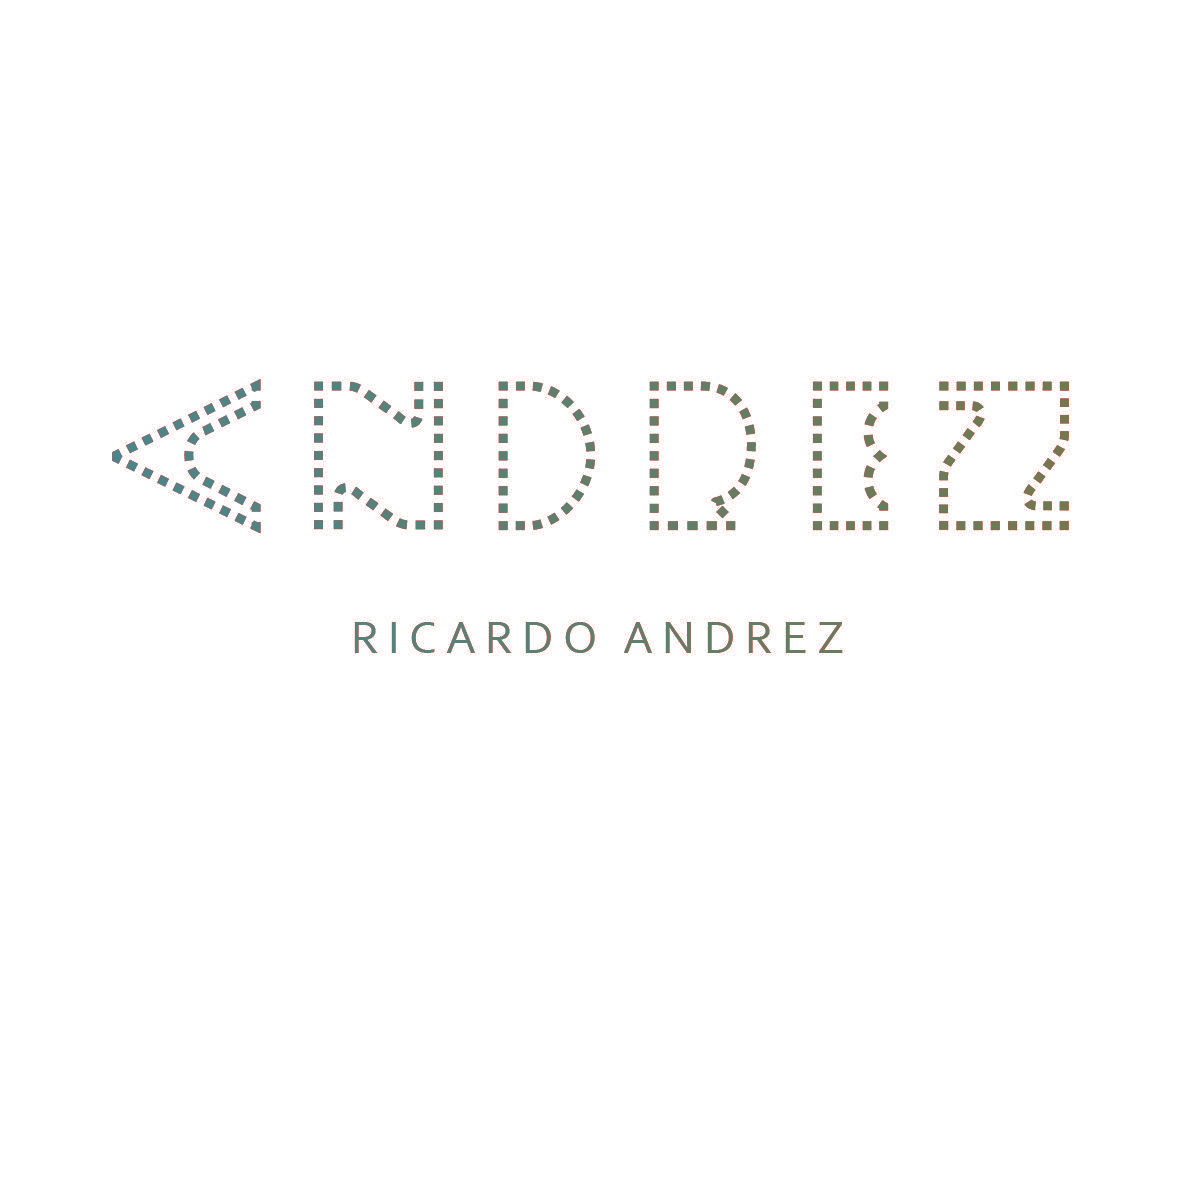 RICARDO ANDREZ